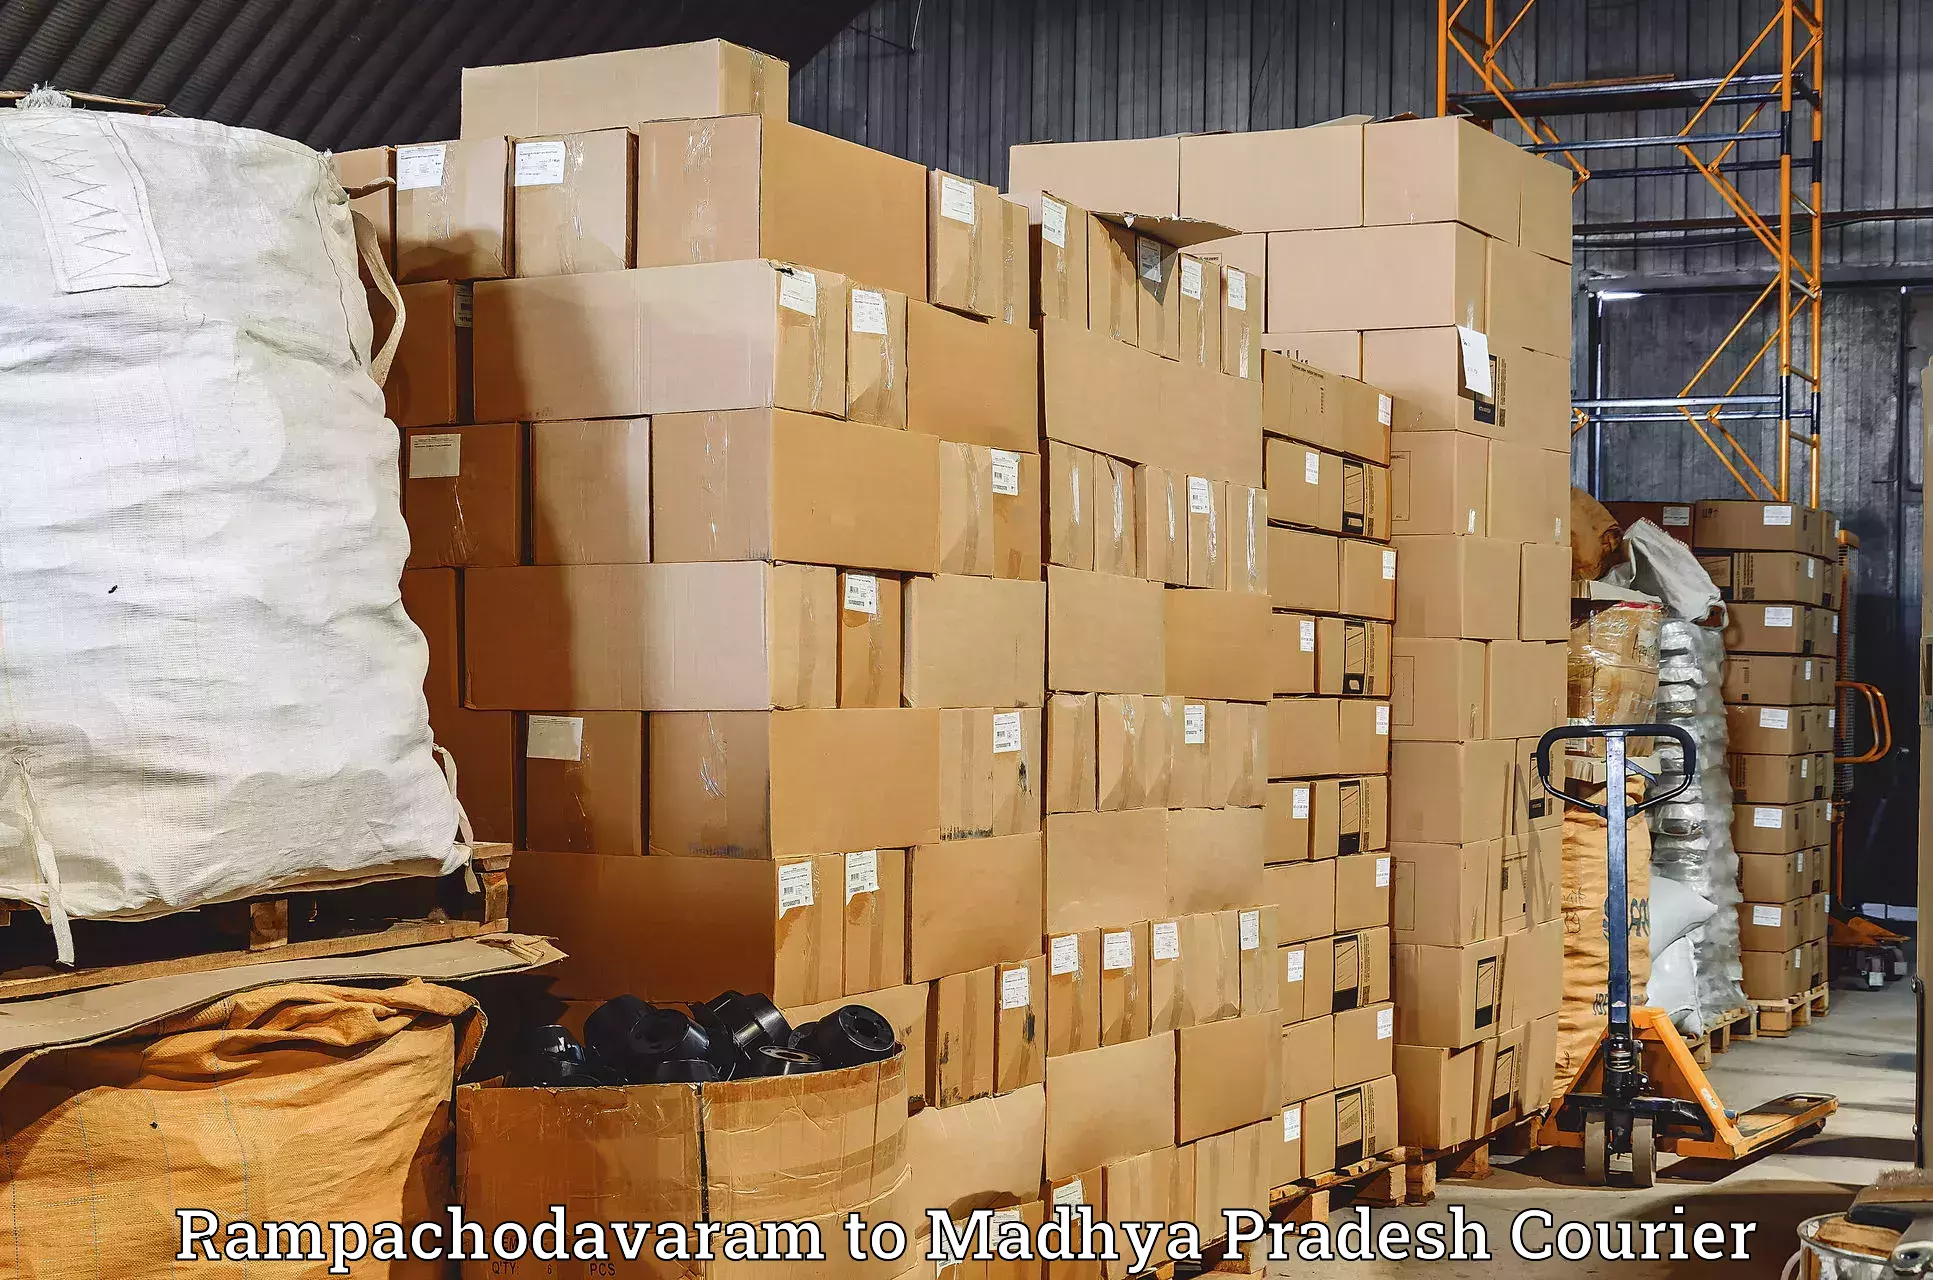 Reliable courier service Rampachodavaram to Shahpura Dindori